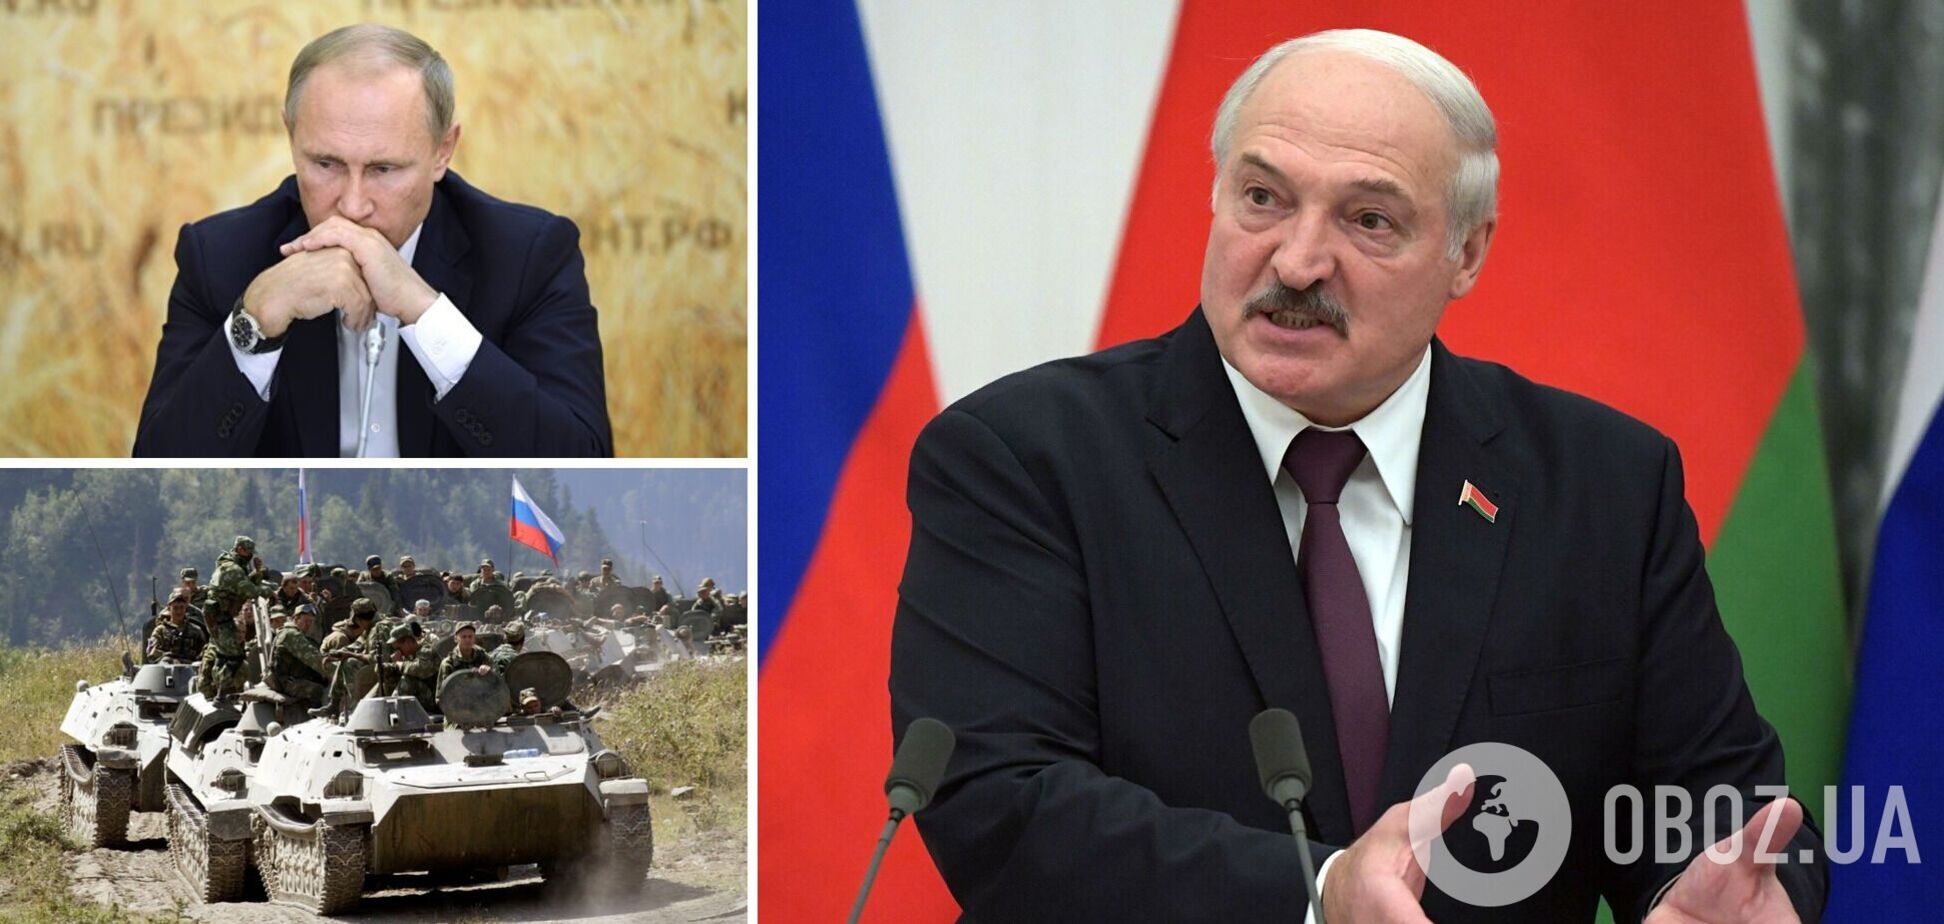 Лукашенко обманул Кремль с наступлением на Украину, Путин в бешенстве, – Геращенко